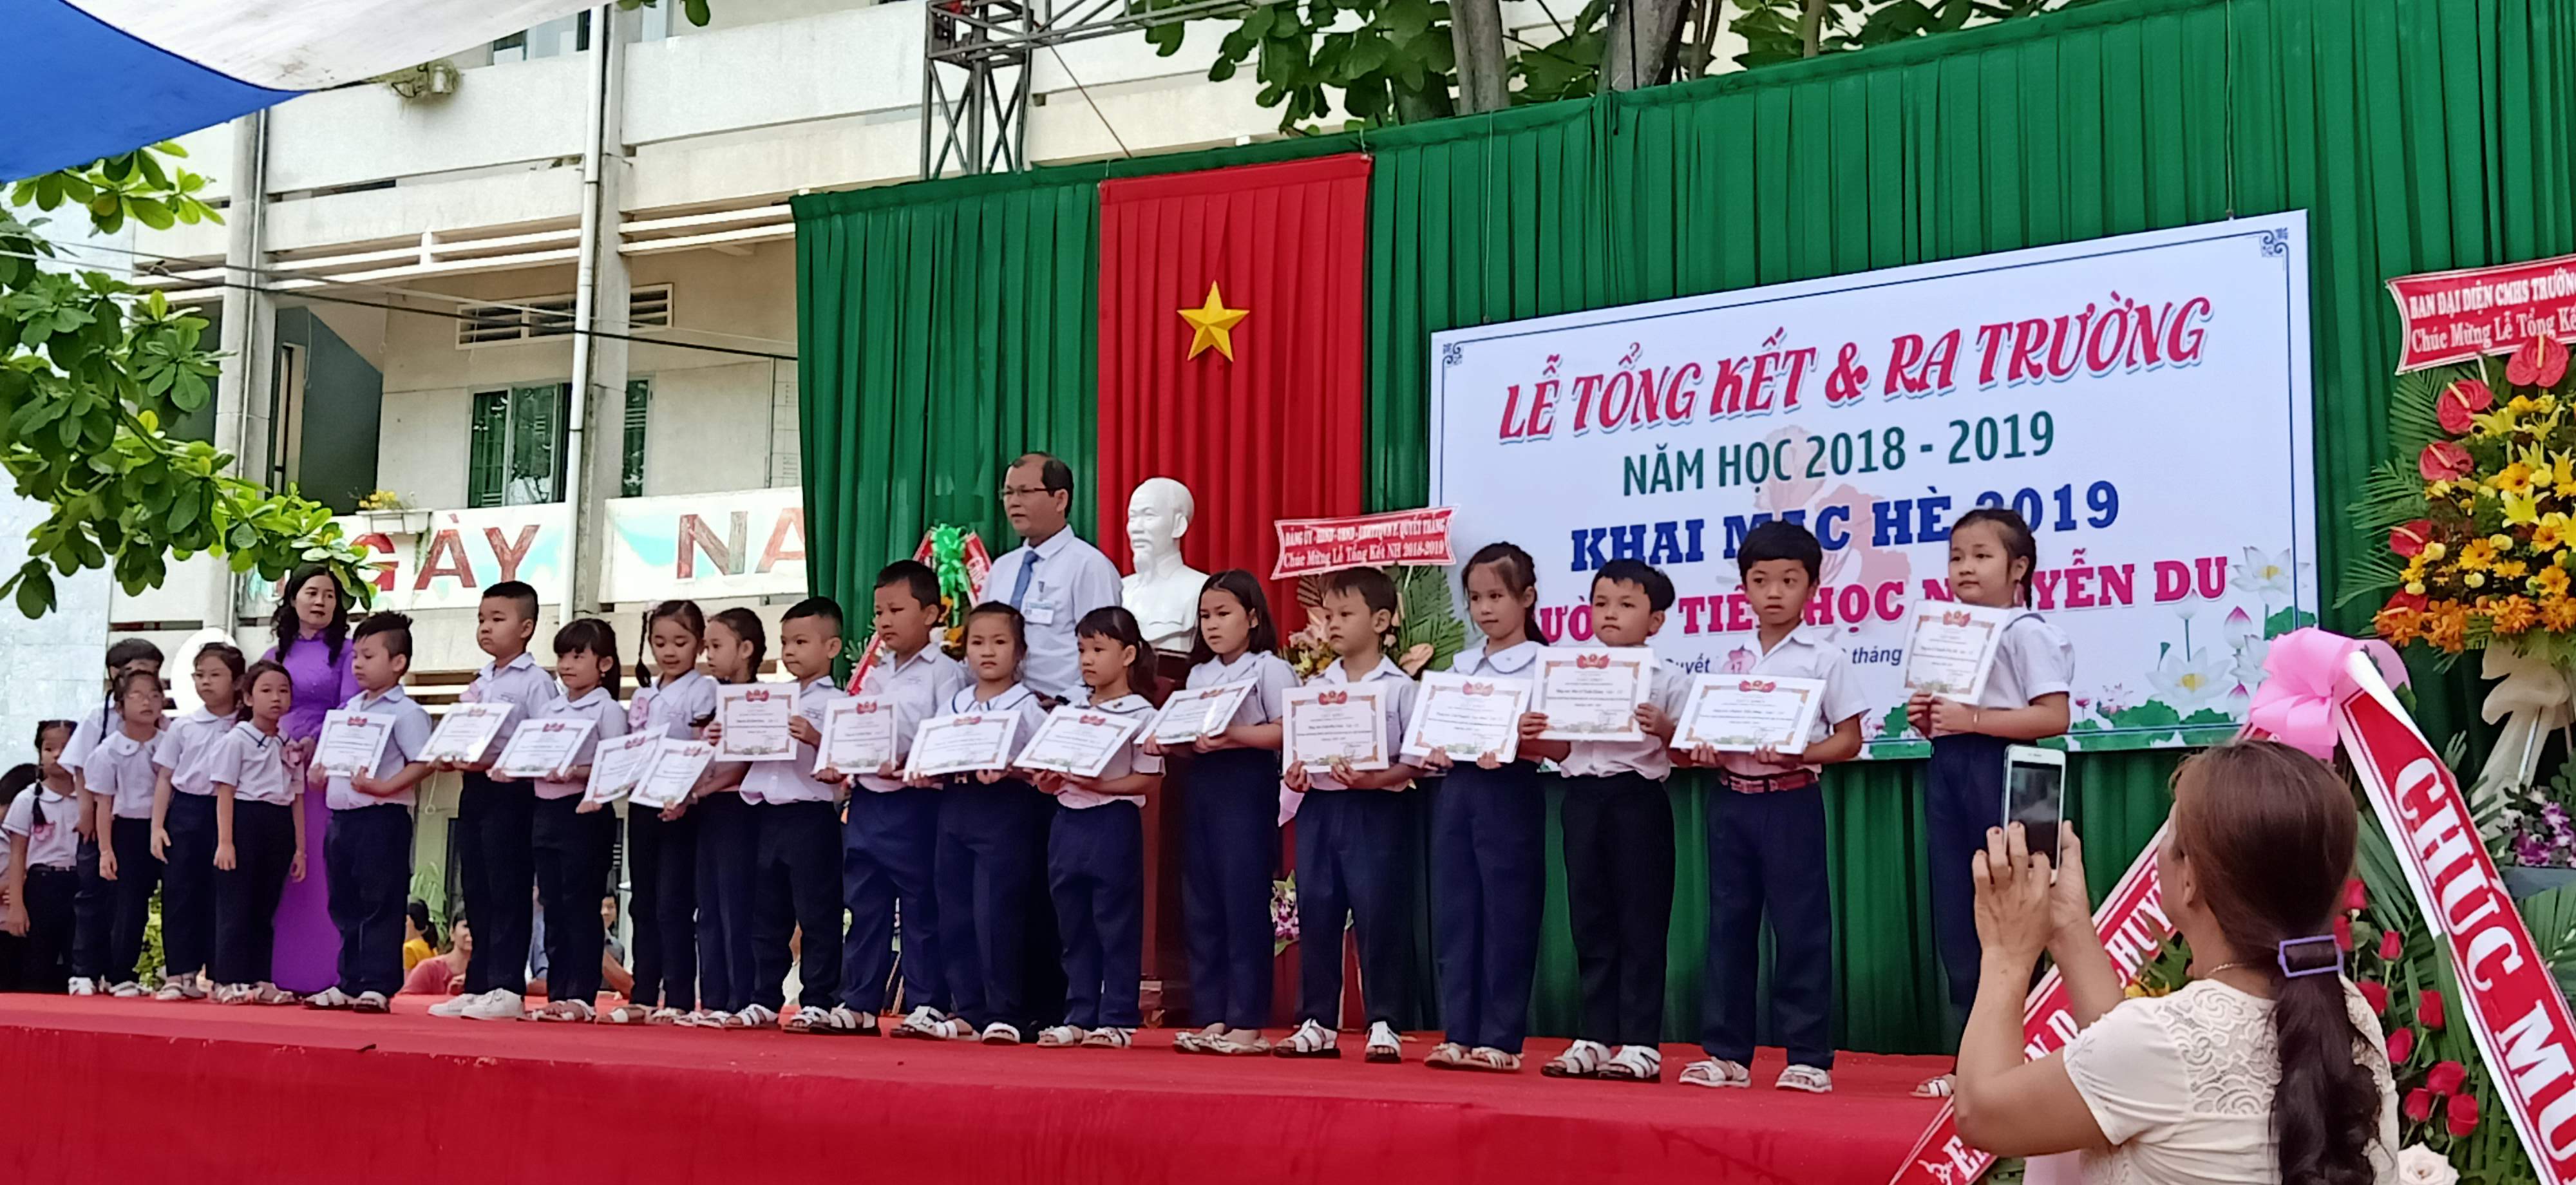 Trường Tiểu học Nguyễn Du, Tp. Biên Hòa tổ chức Tổng kết năm học 2018-2019 và Khai mạc Hè 2019